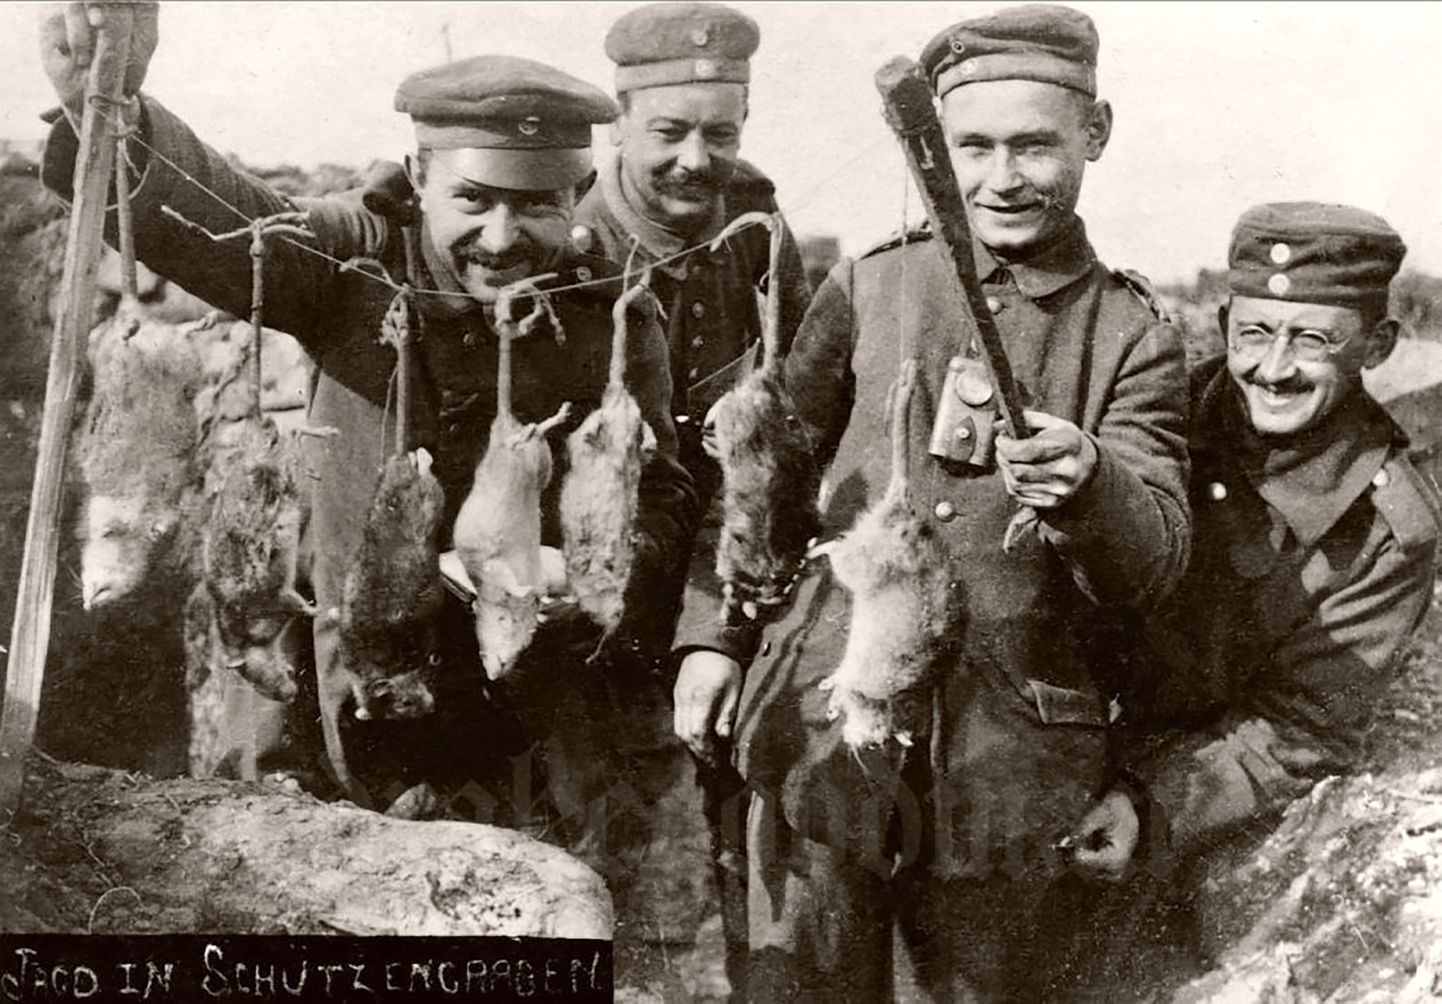 KAS AJALUGU KORDUB? I maailmasõja ajal tehtud fotol uhkustavad Saksa sõdurid öö jooksul kaevikust püütud rottidega. Tundub, et toonane hiire-rotiuputus kordub äimasolevas Ukraina sõjas, kus samuti on tekkinud positsioonisõda ja närilised muutunud sõdurite jaoks suureks nuhtluseks.